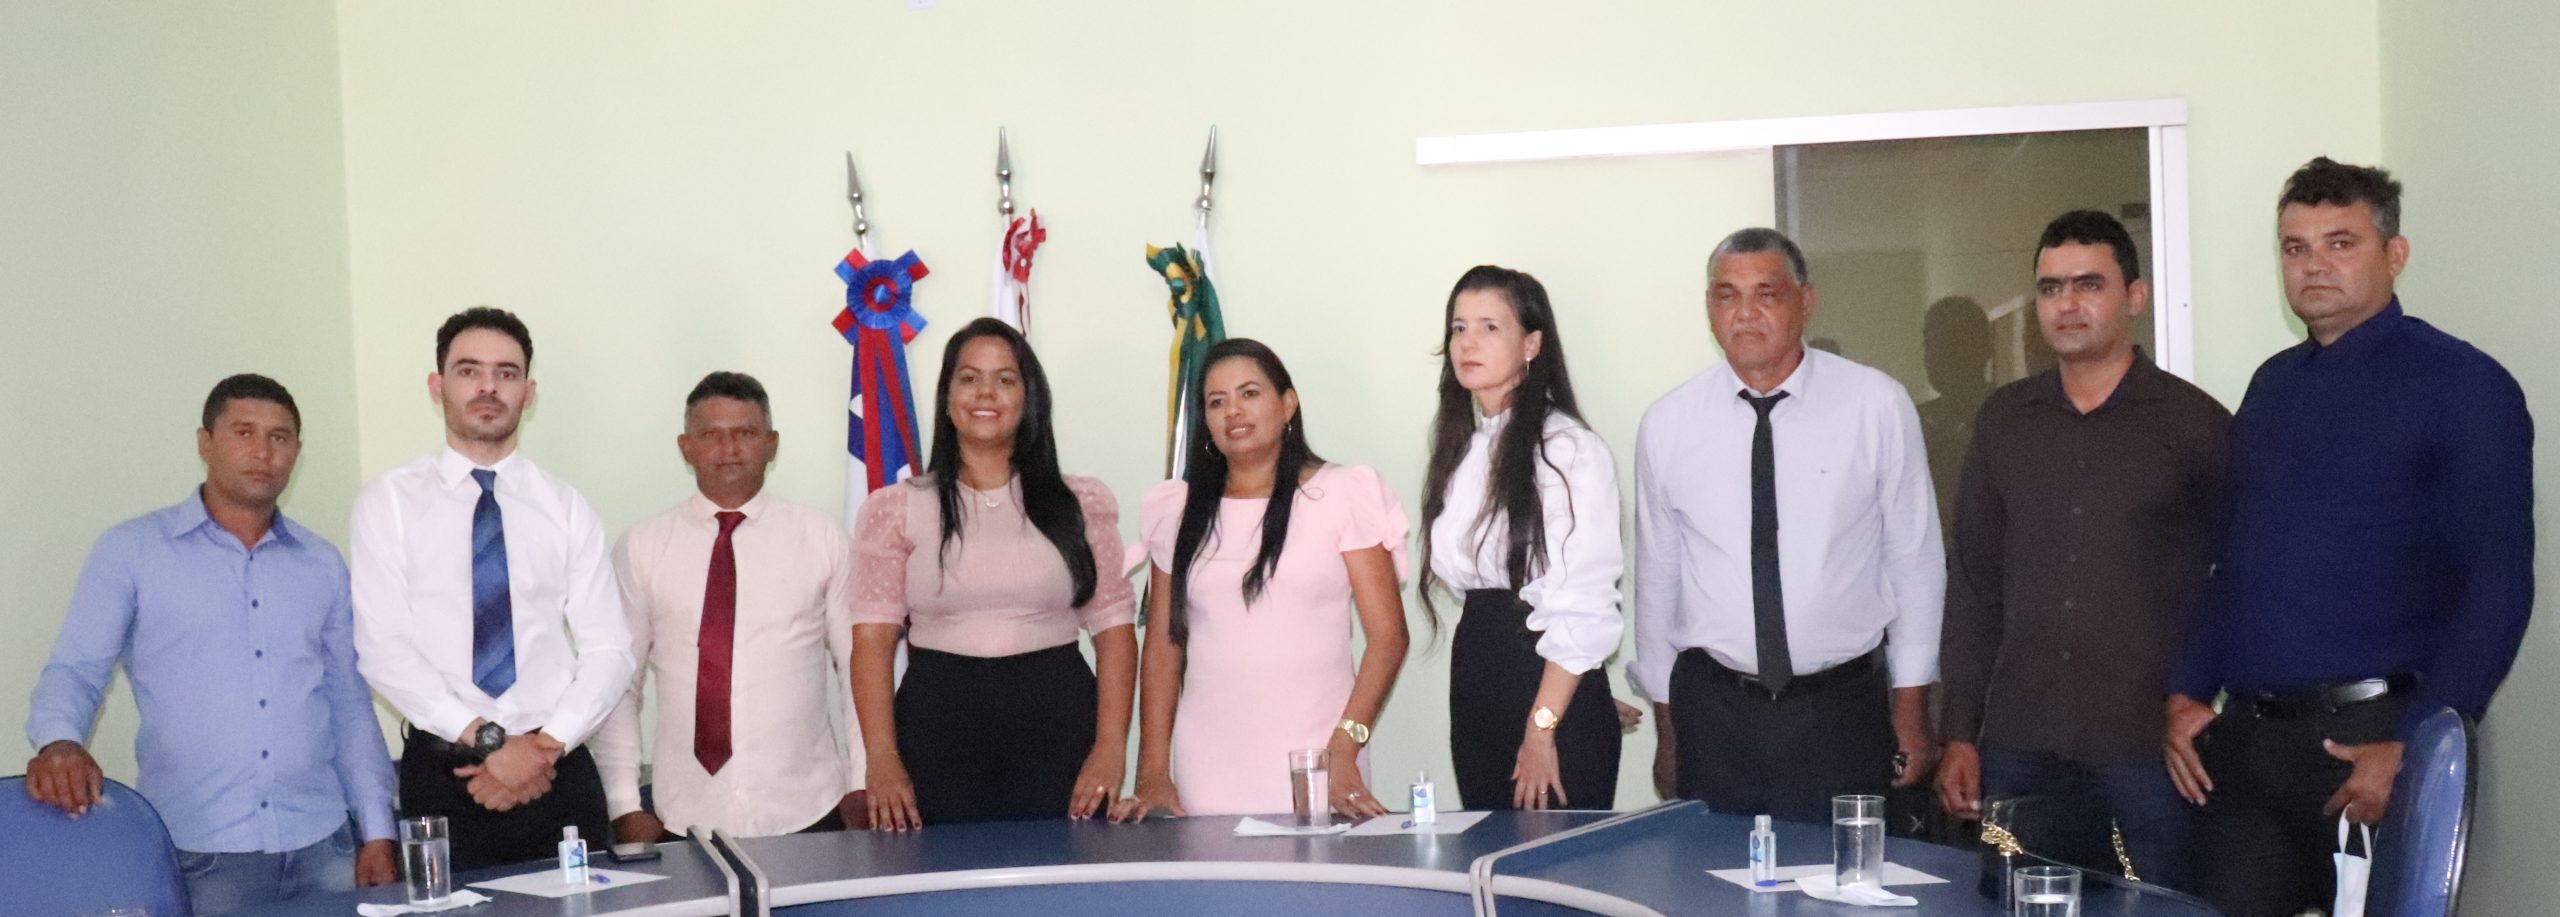 IFBA Jequié retoma as atividades presenciais — IFBA - Instituto Federal de  Educação, Ciência e Tecnologia da Bahia Instituto Federal da Bahia